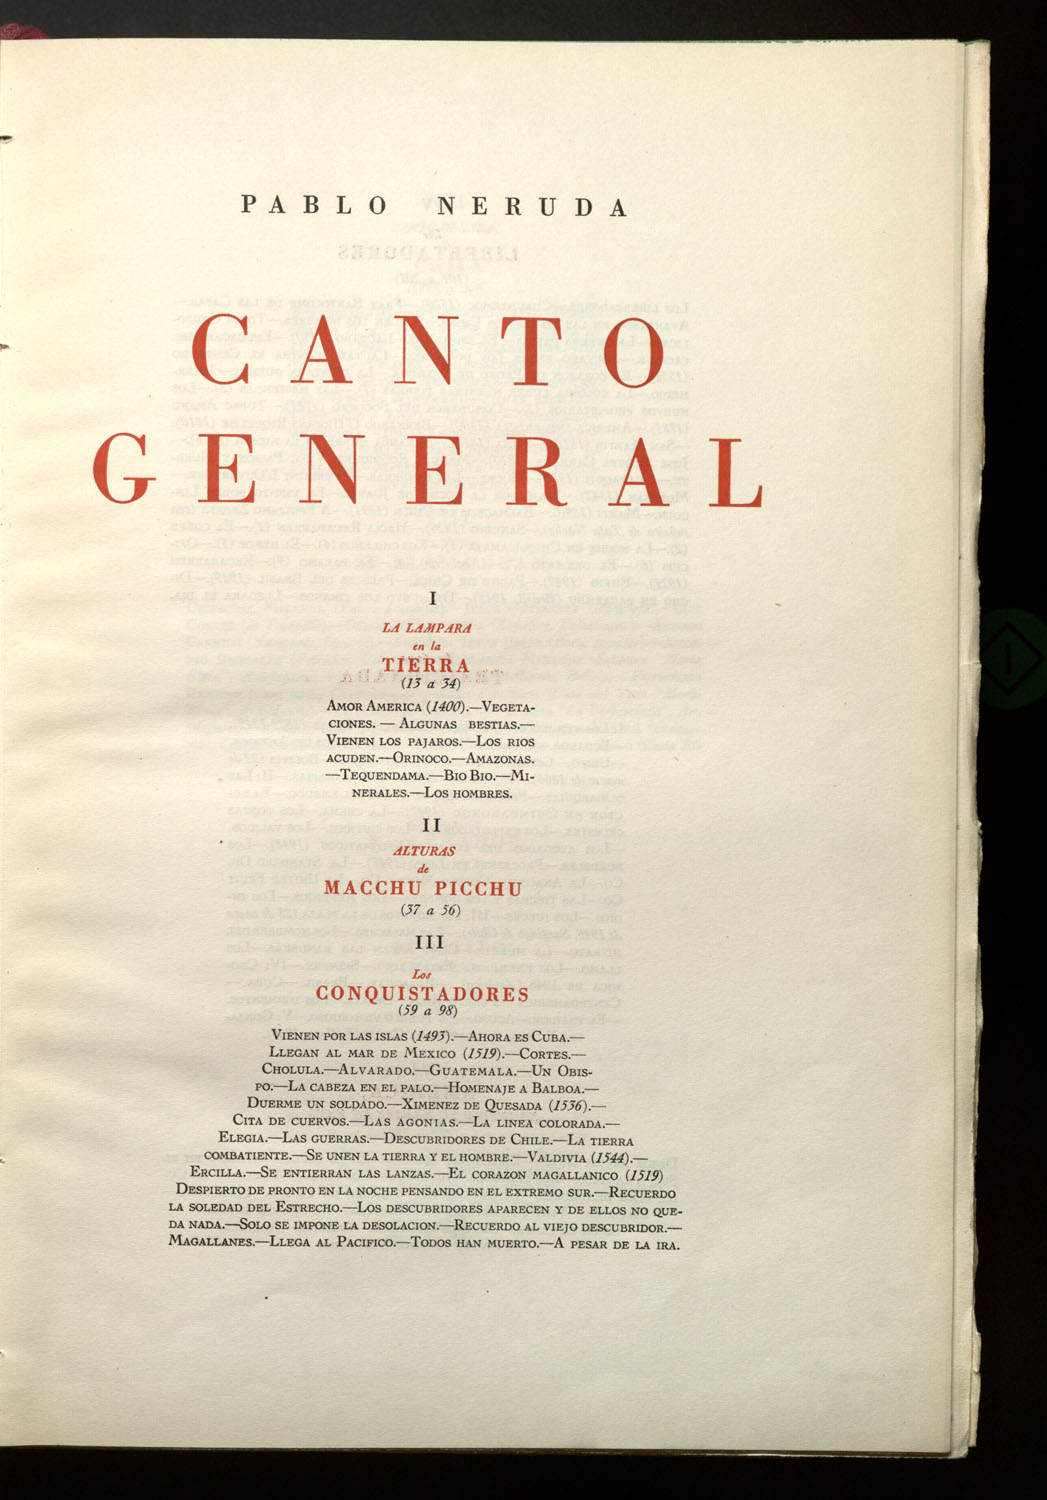 Canto General de Pablo Neruda. Primera Edición. México 1950, ejemplar 423